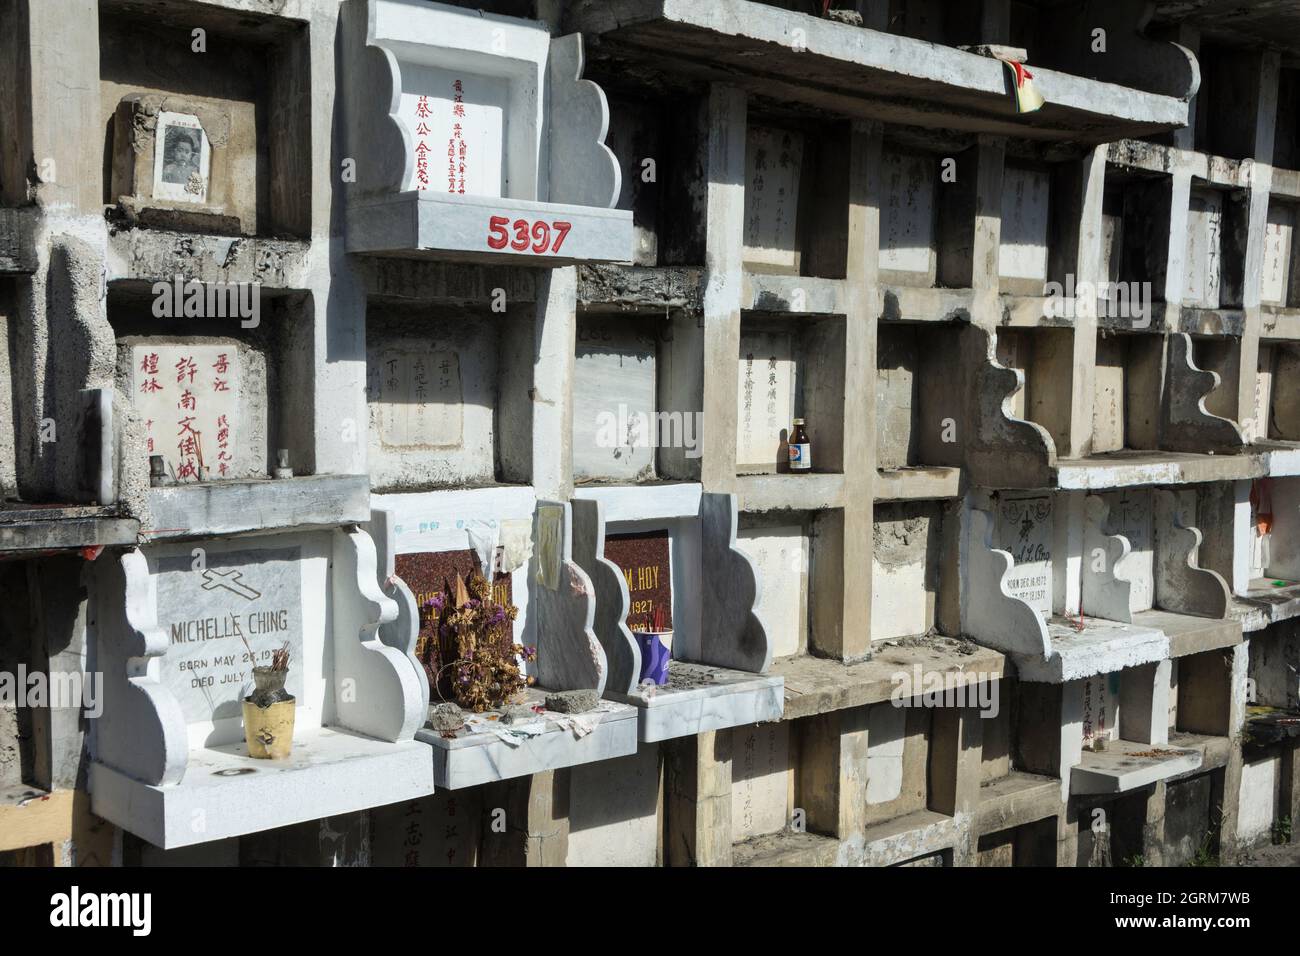 Mur de tombes dans le cimetière chinois de Manille, Manille, Philippines Banque D'Images